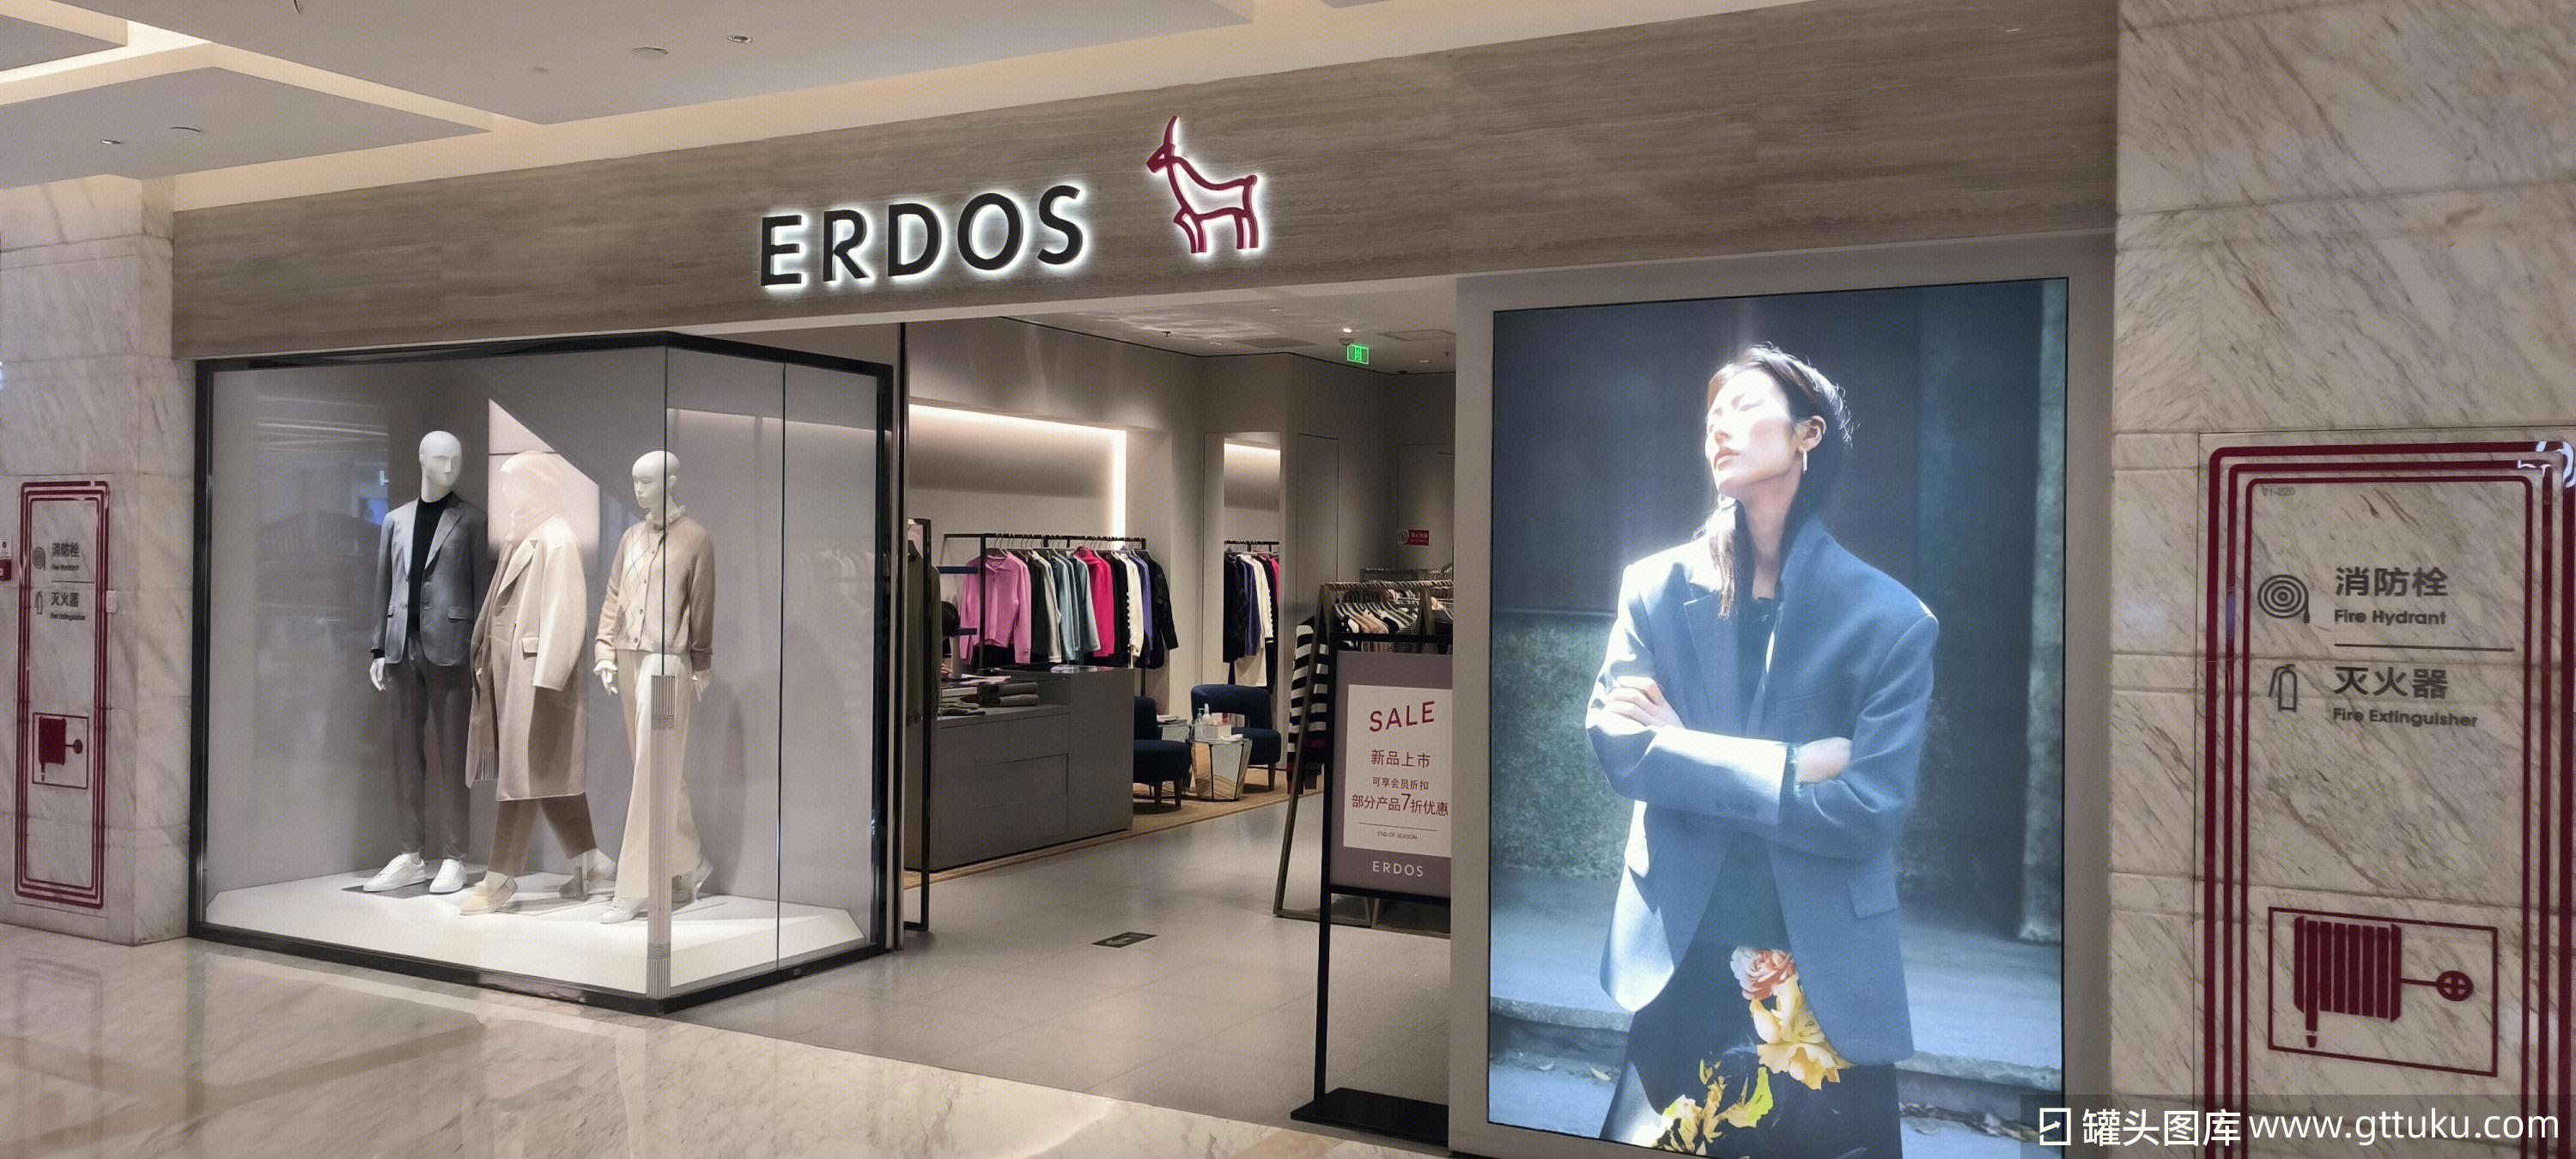 上海·“ERDOS鄂尔多斯”概念旗舰店设计17 | SOHO设计区